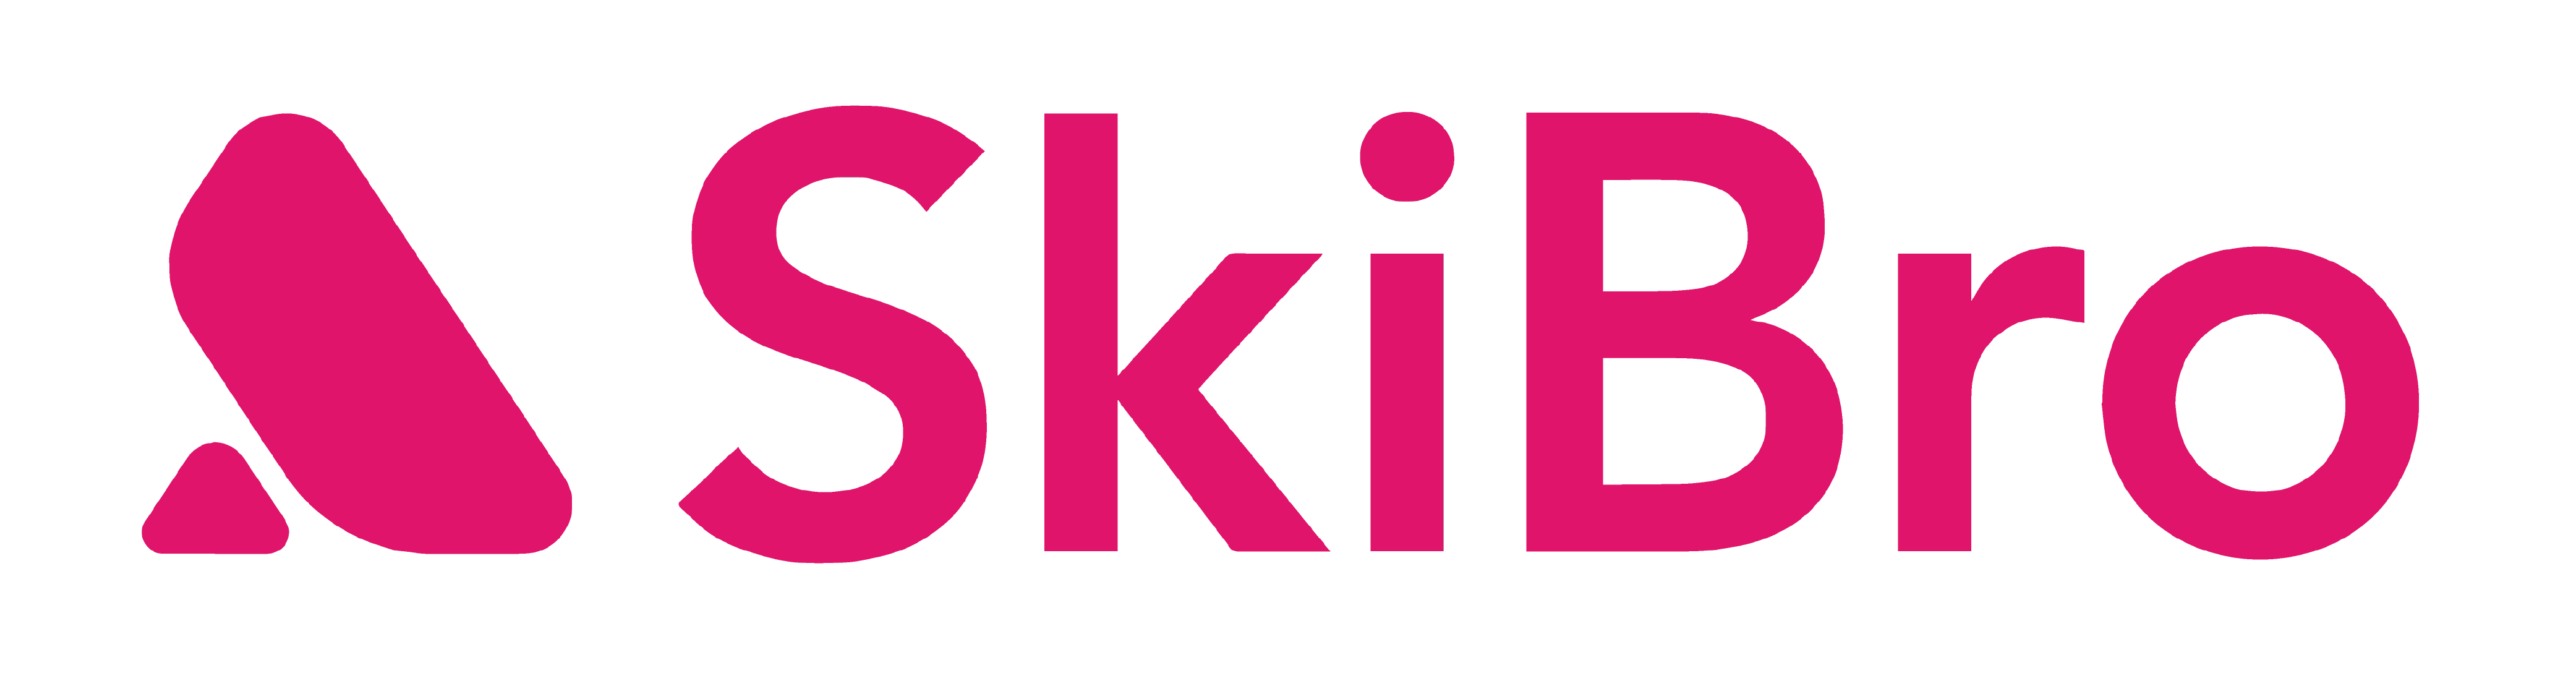 Main SkiBro logo in red